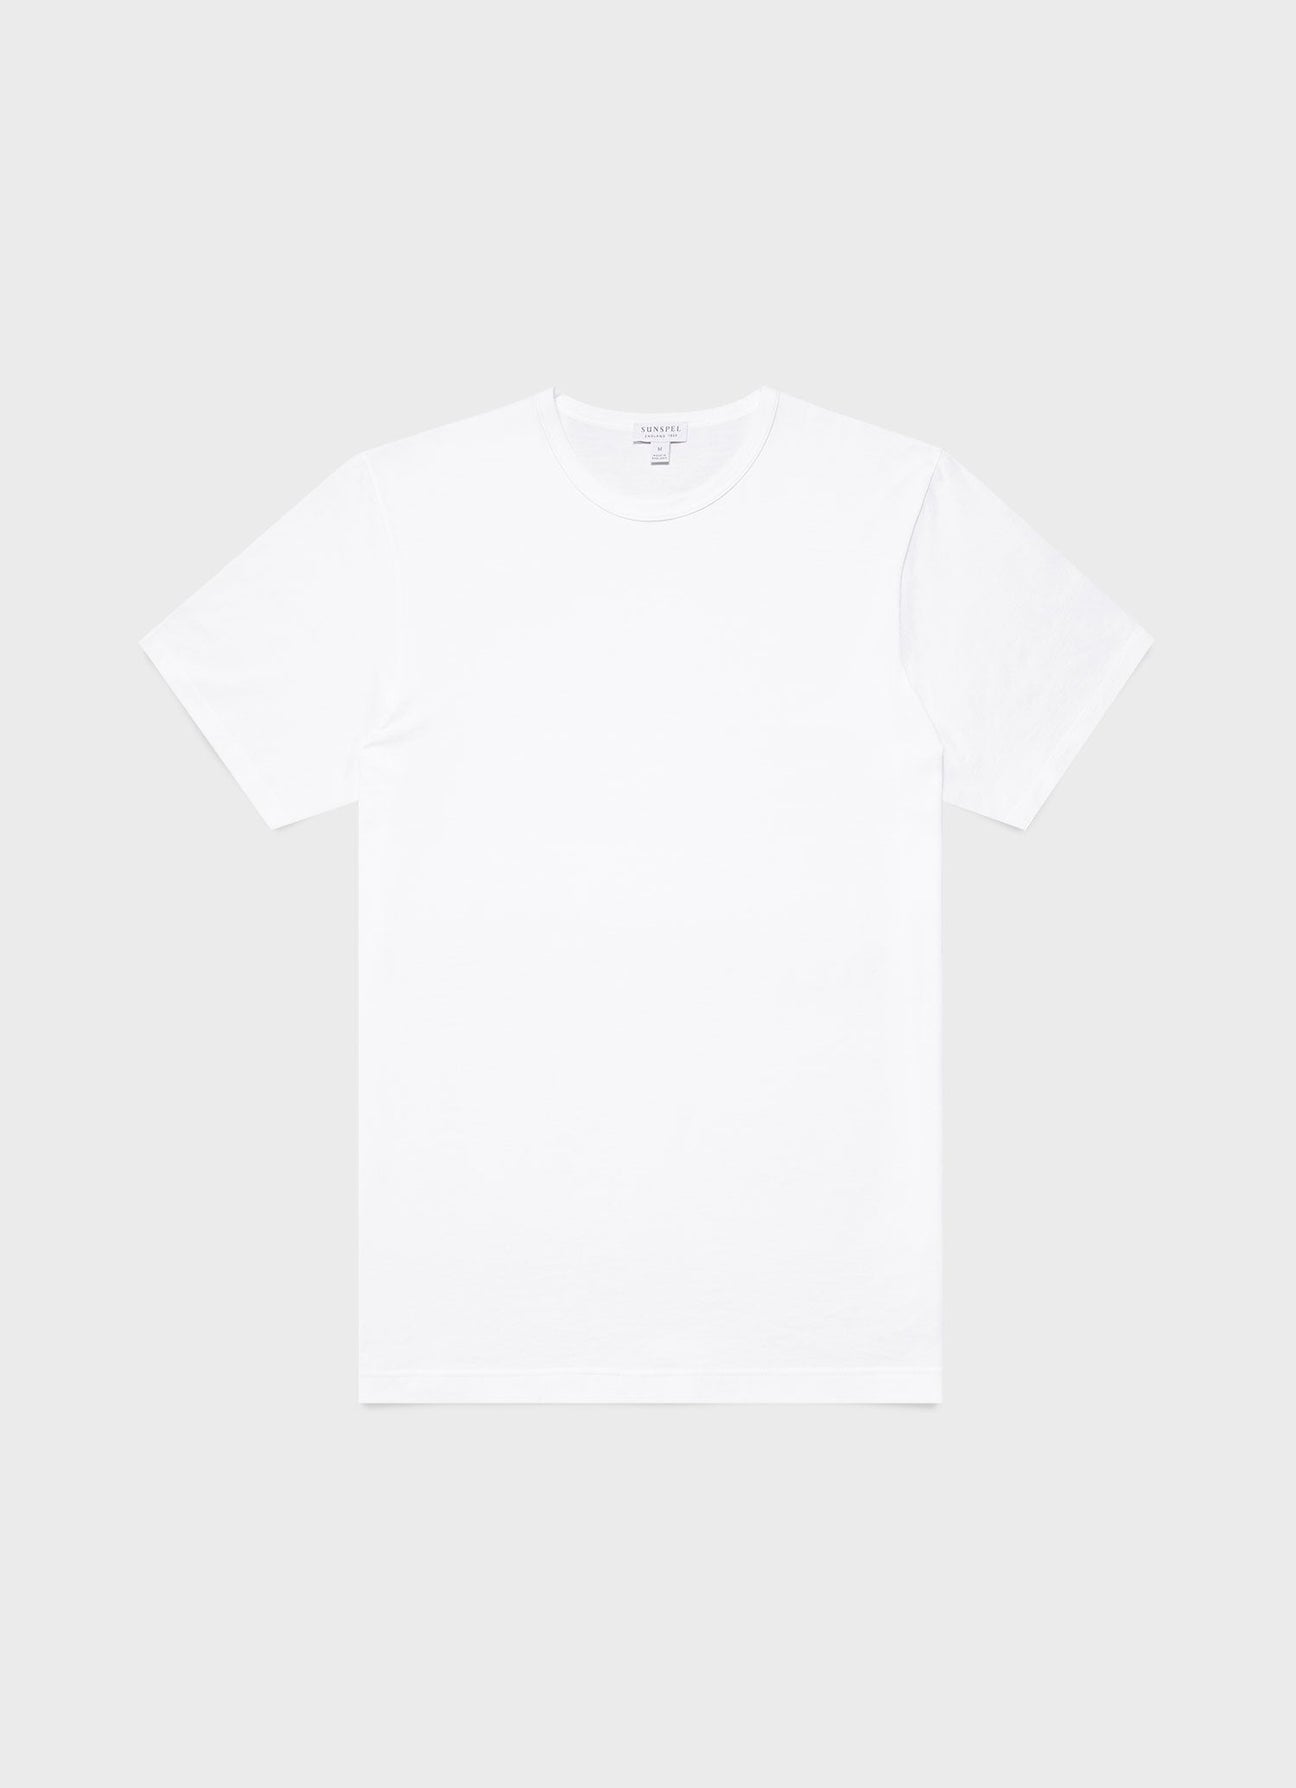 Men's Classic T-shirt in White | Sunspel